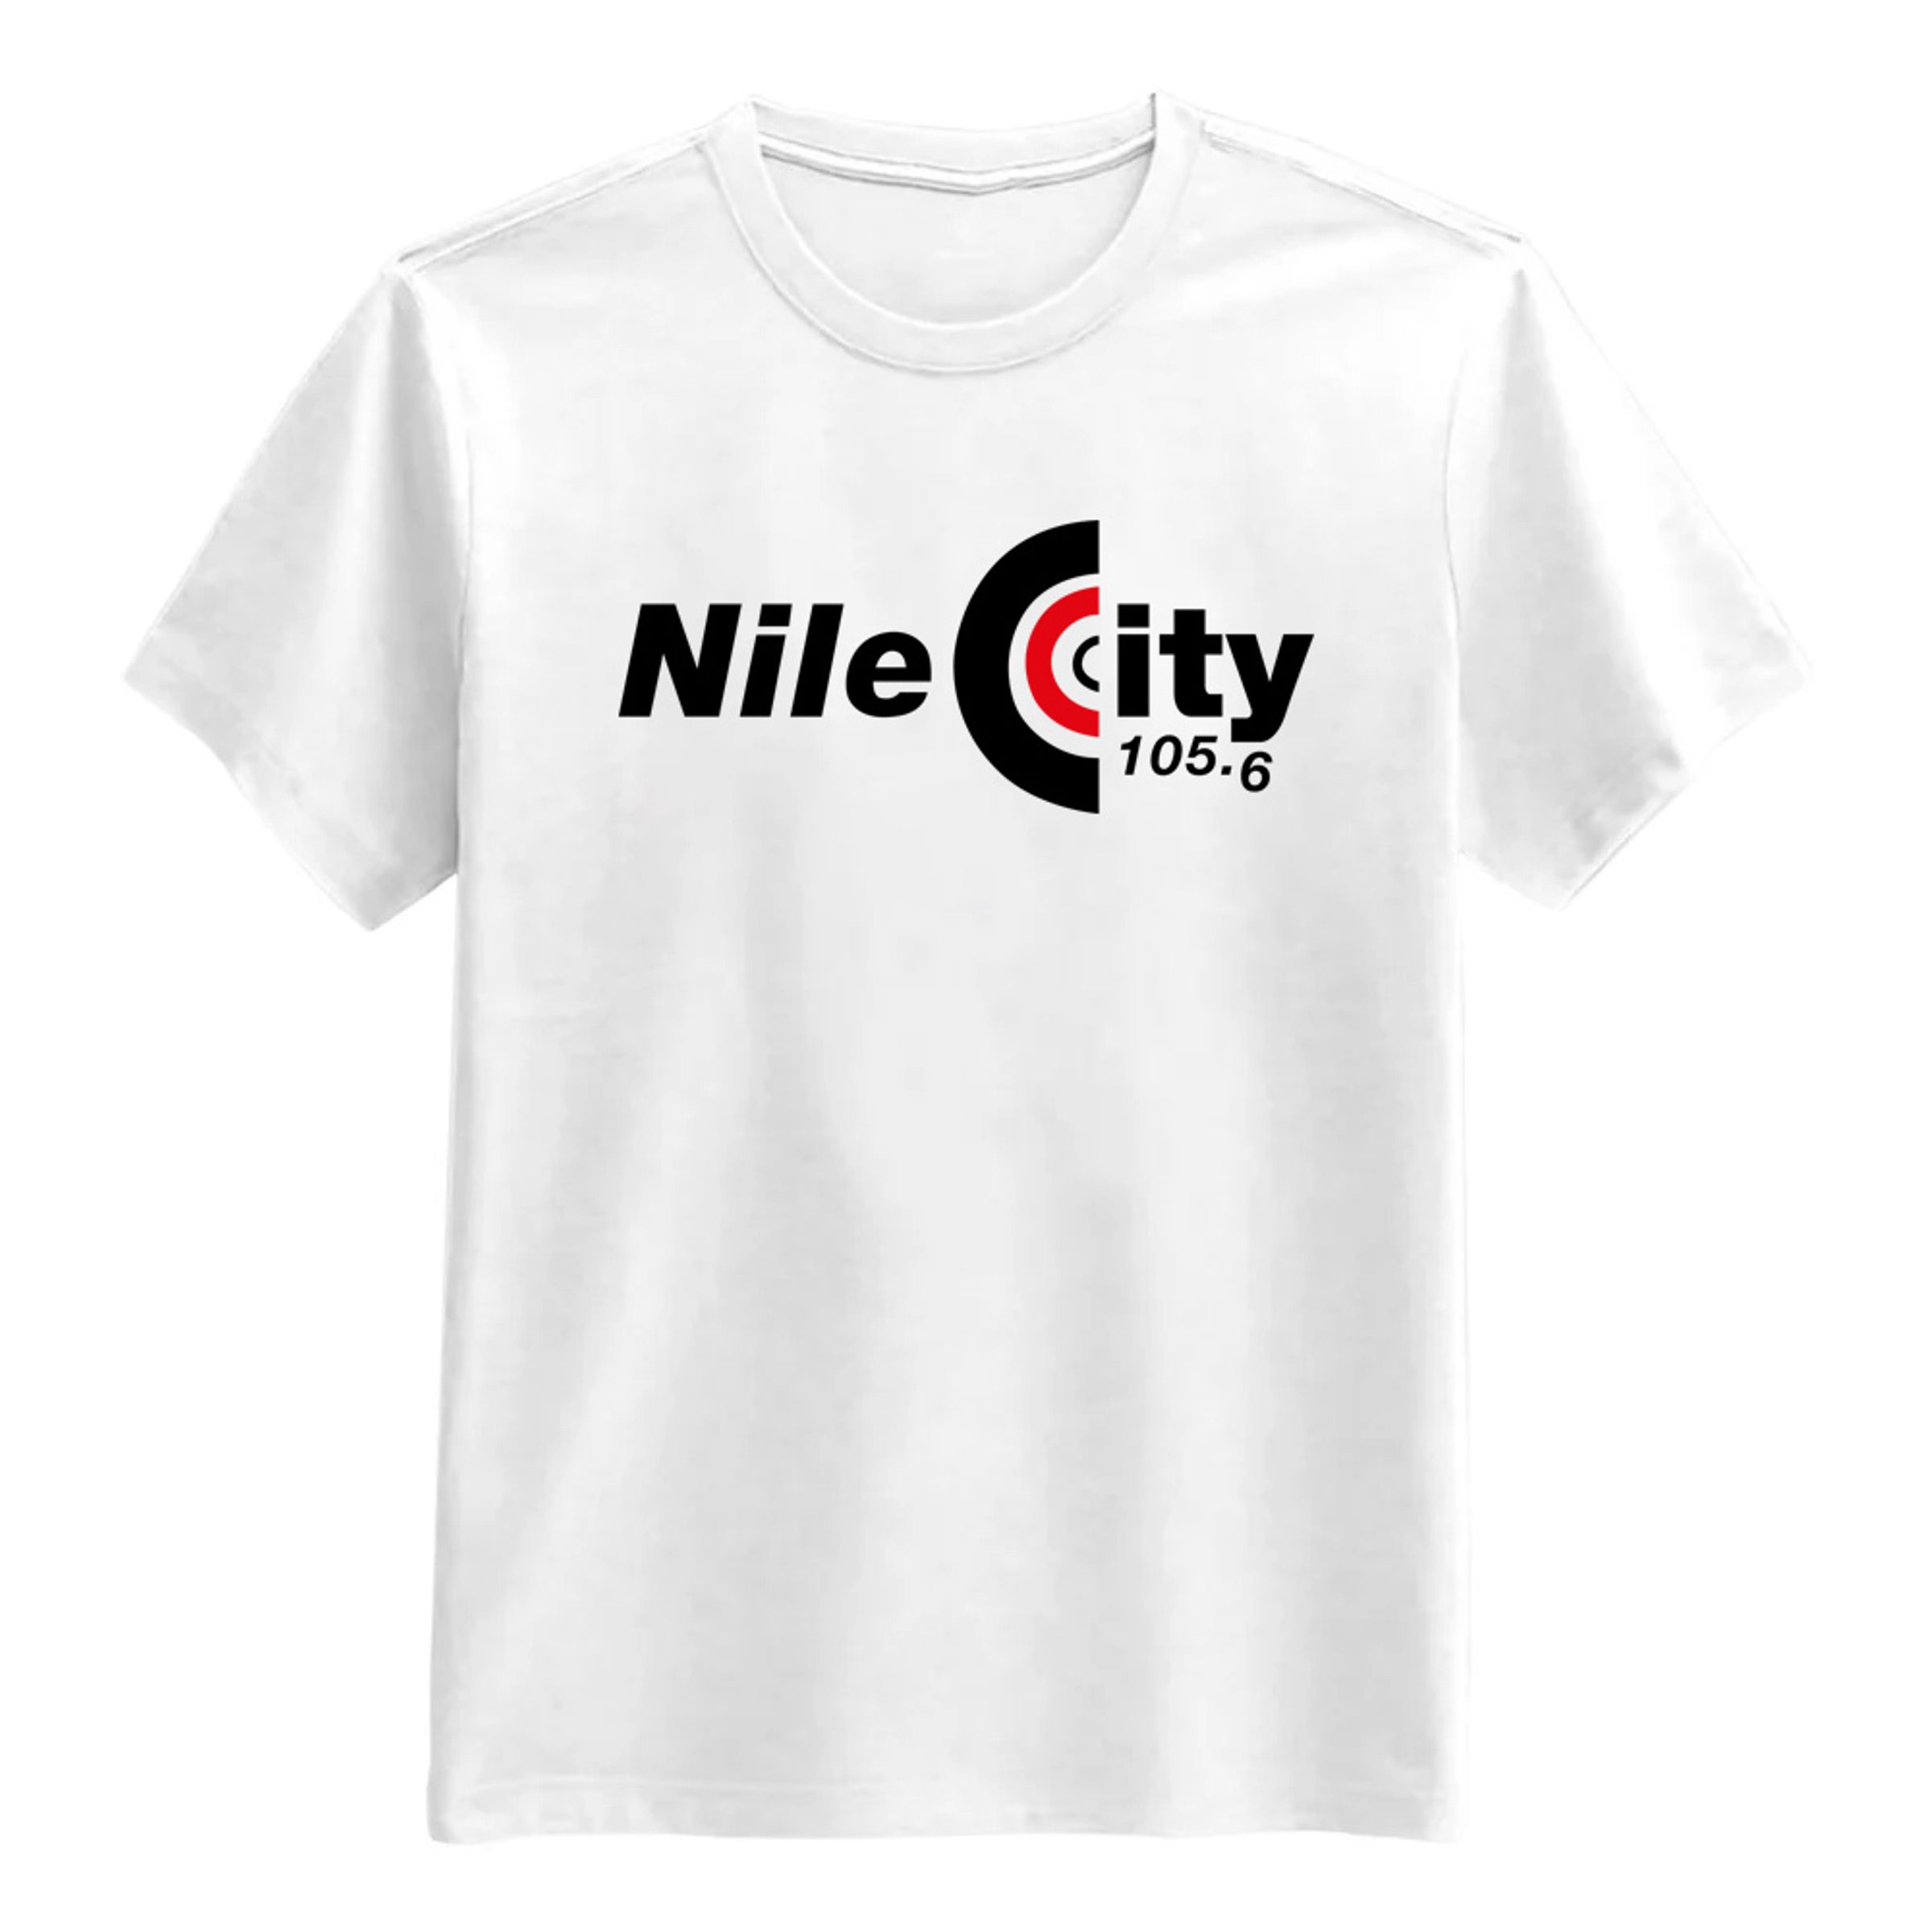 Nile City T-Shirt - XX-Large